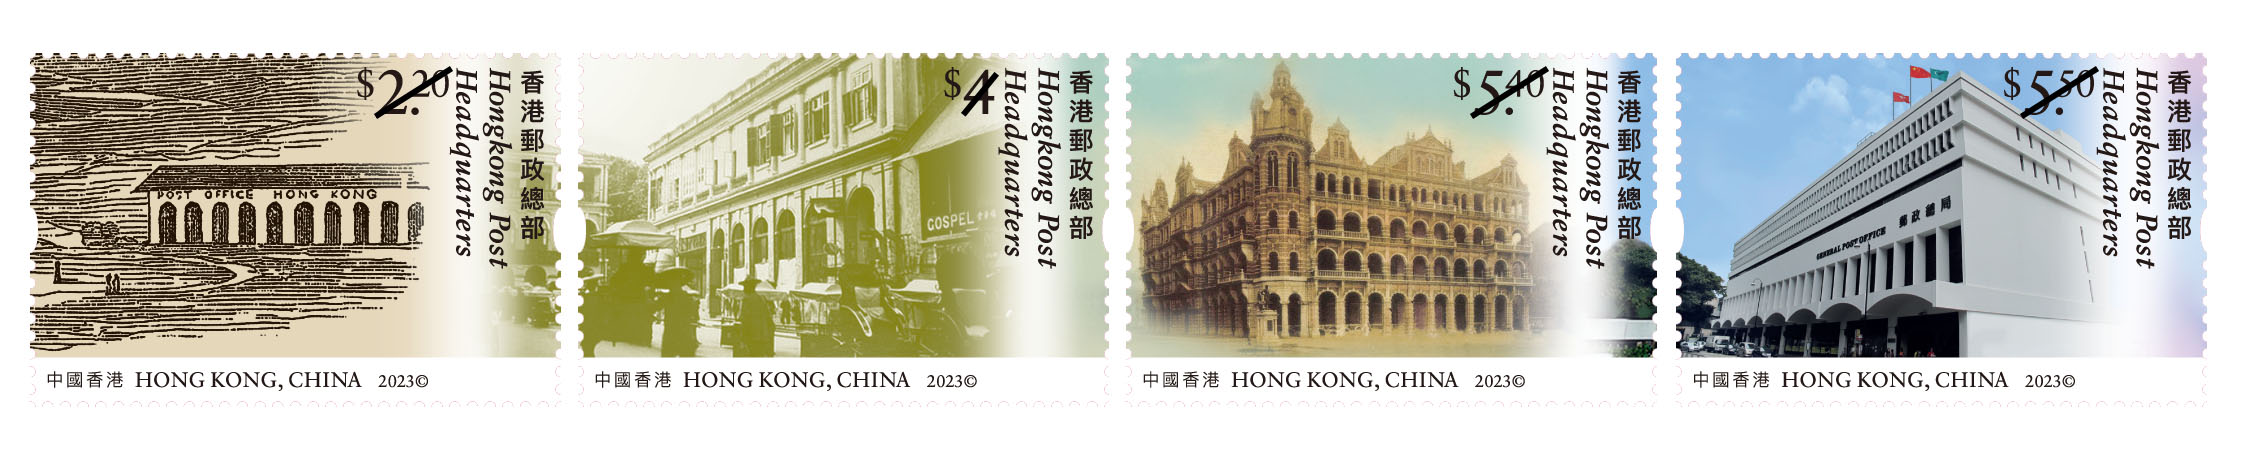 「香港今昔系列：香港郵政總部」特別郵票